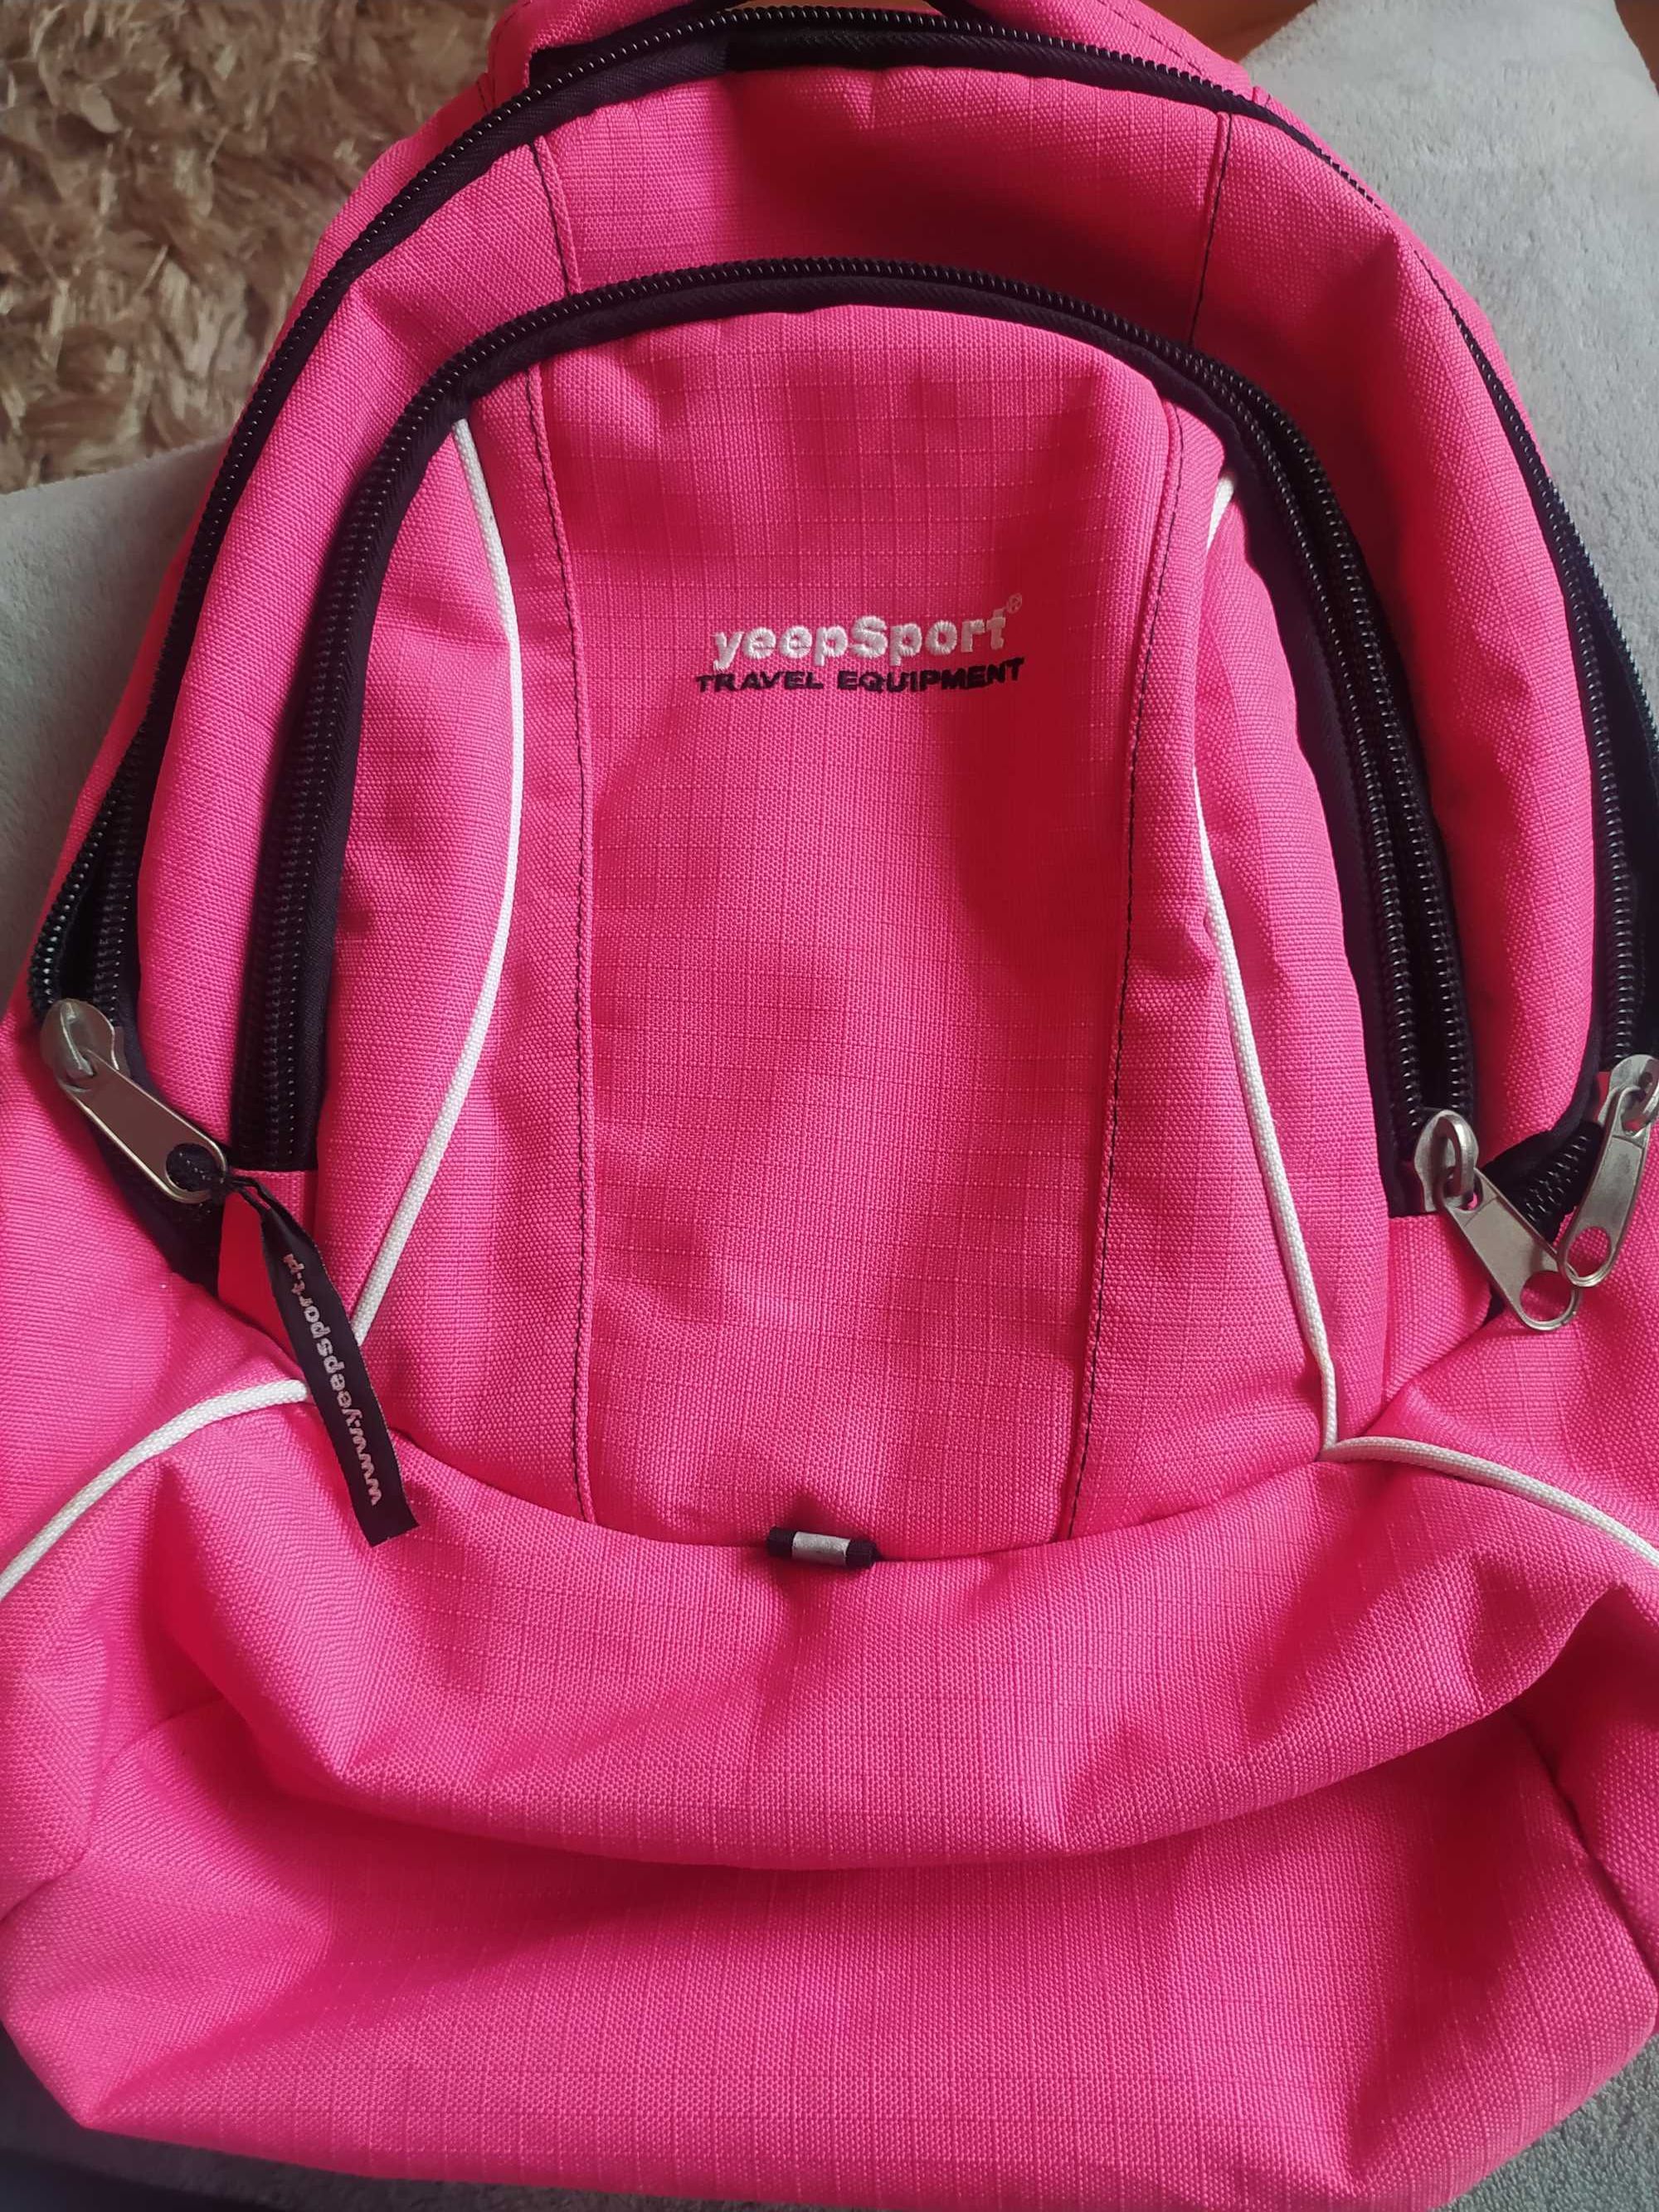 Plecak różowy yeepSport